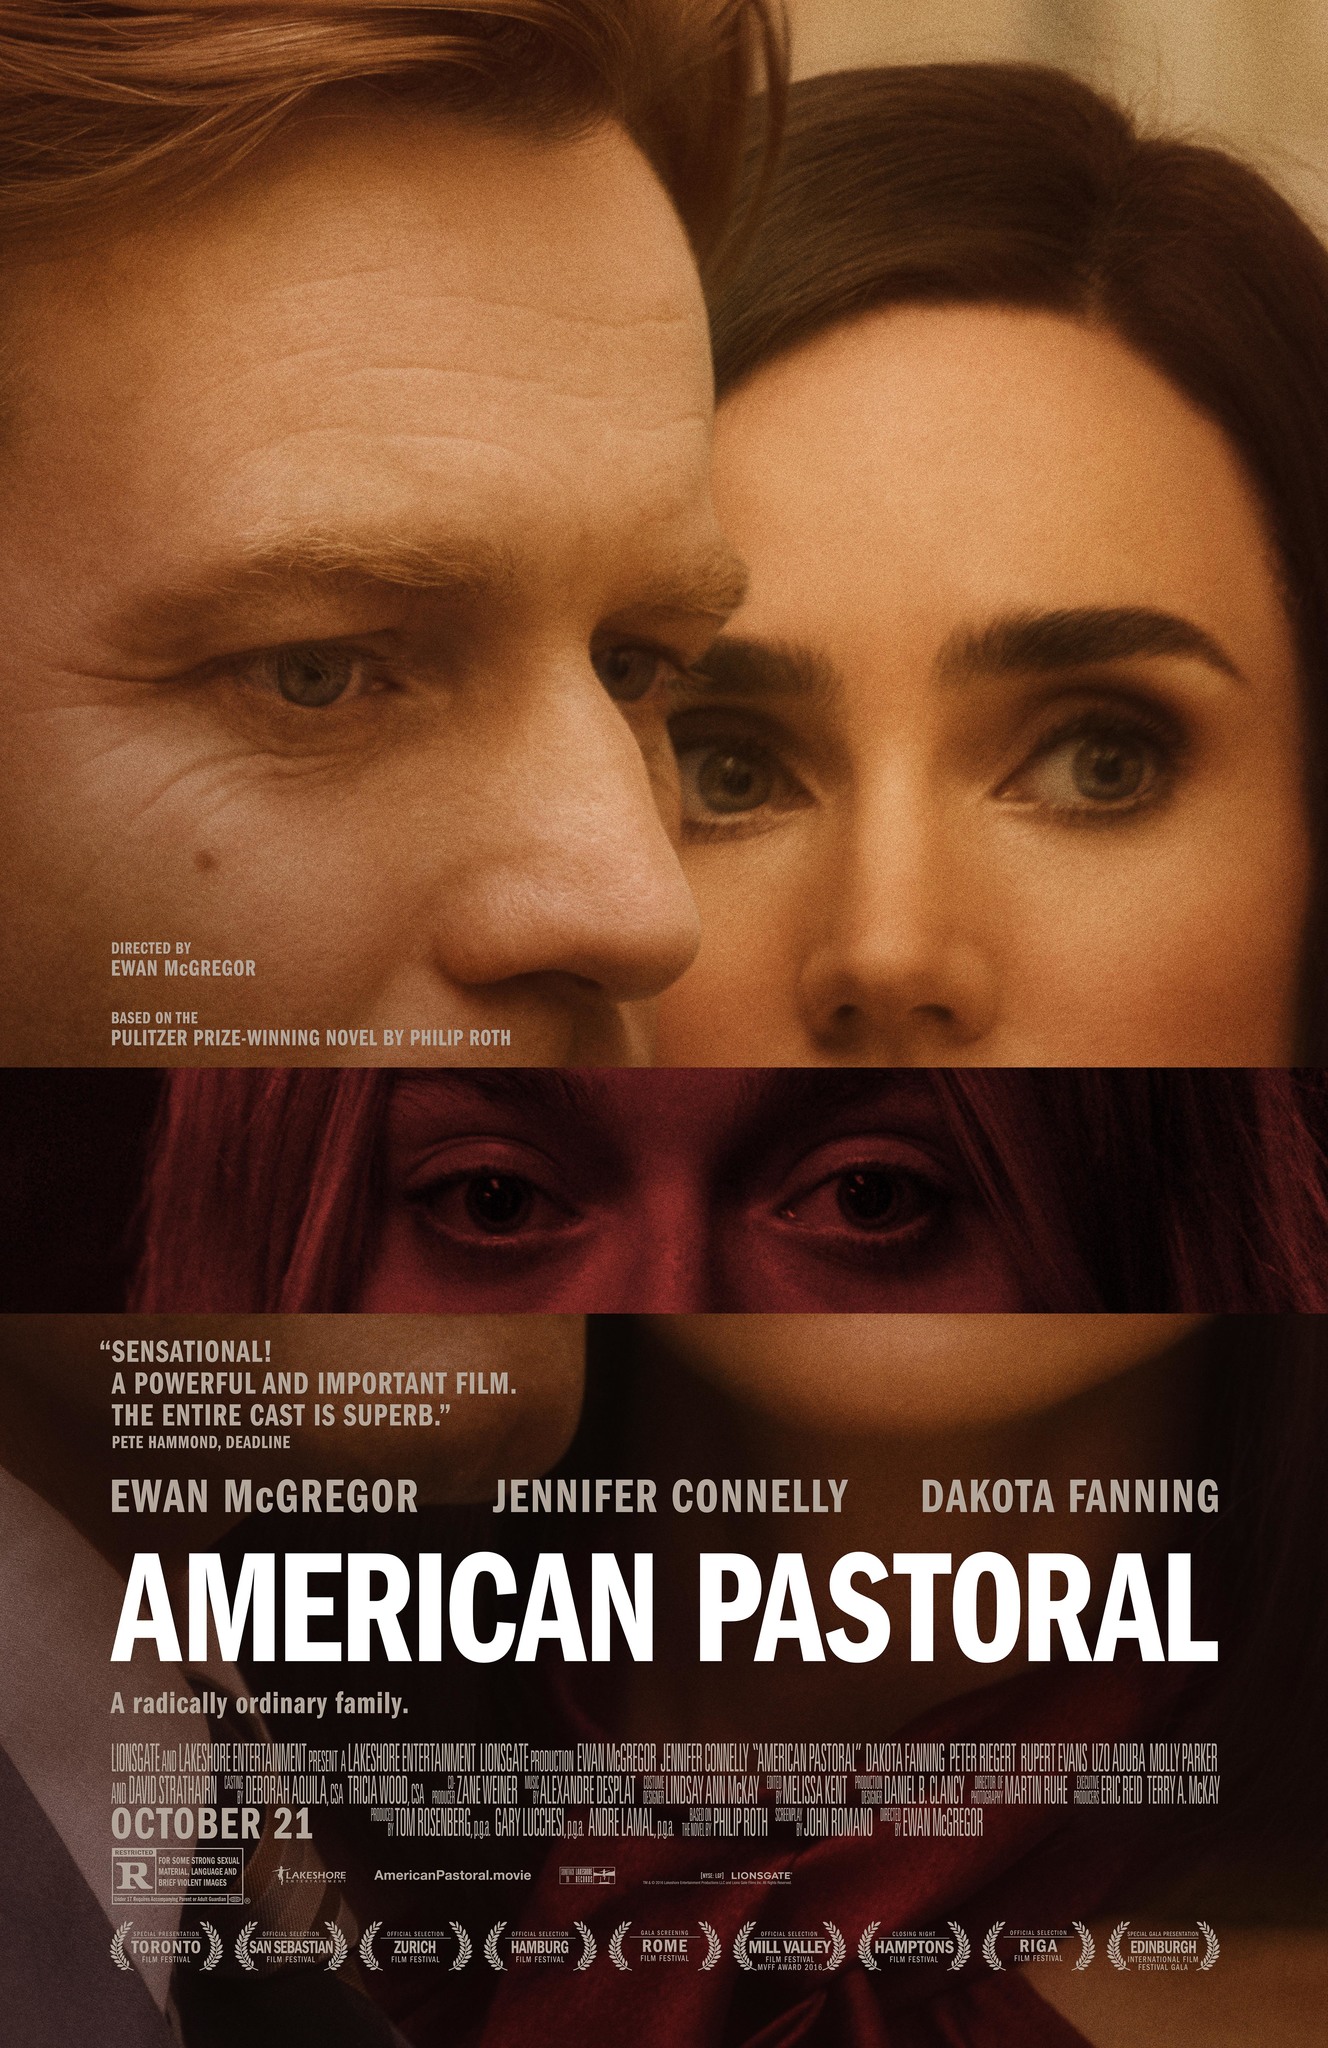 American pastoral (2016) - American pastoral